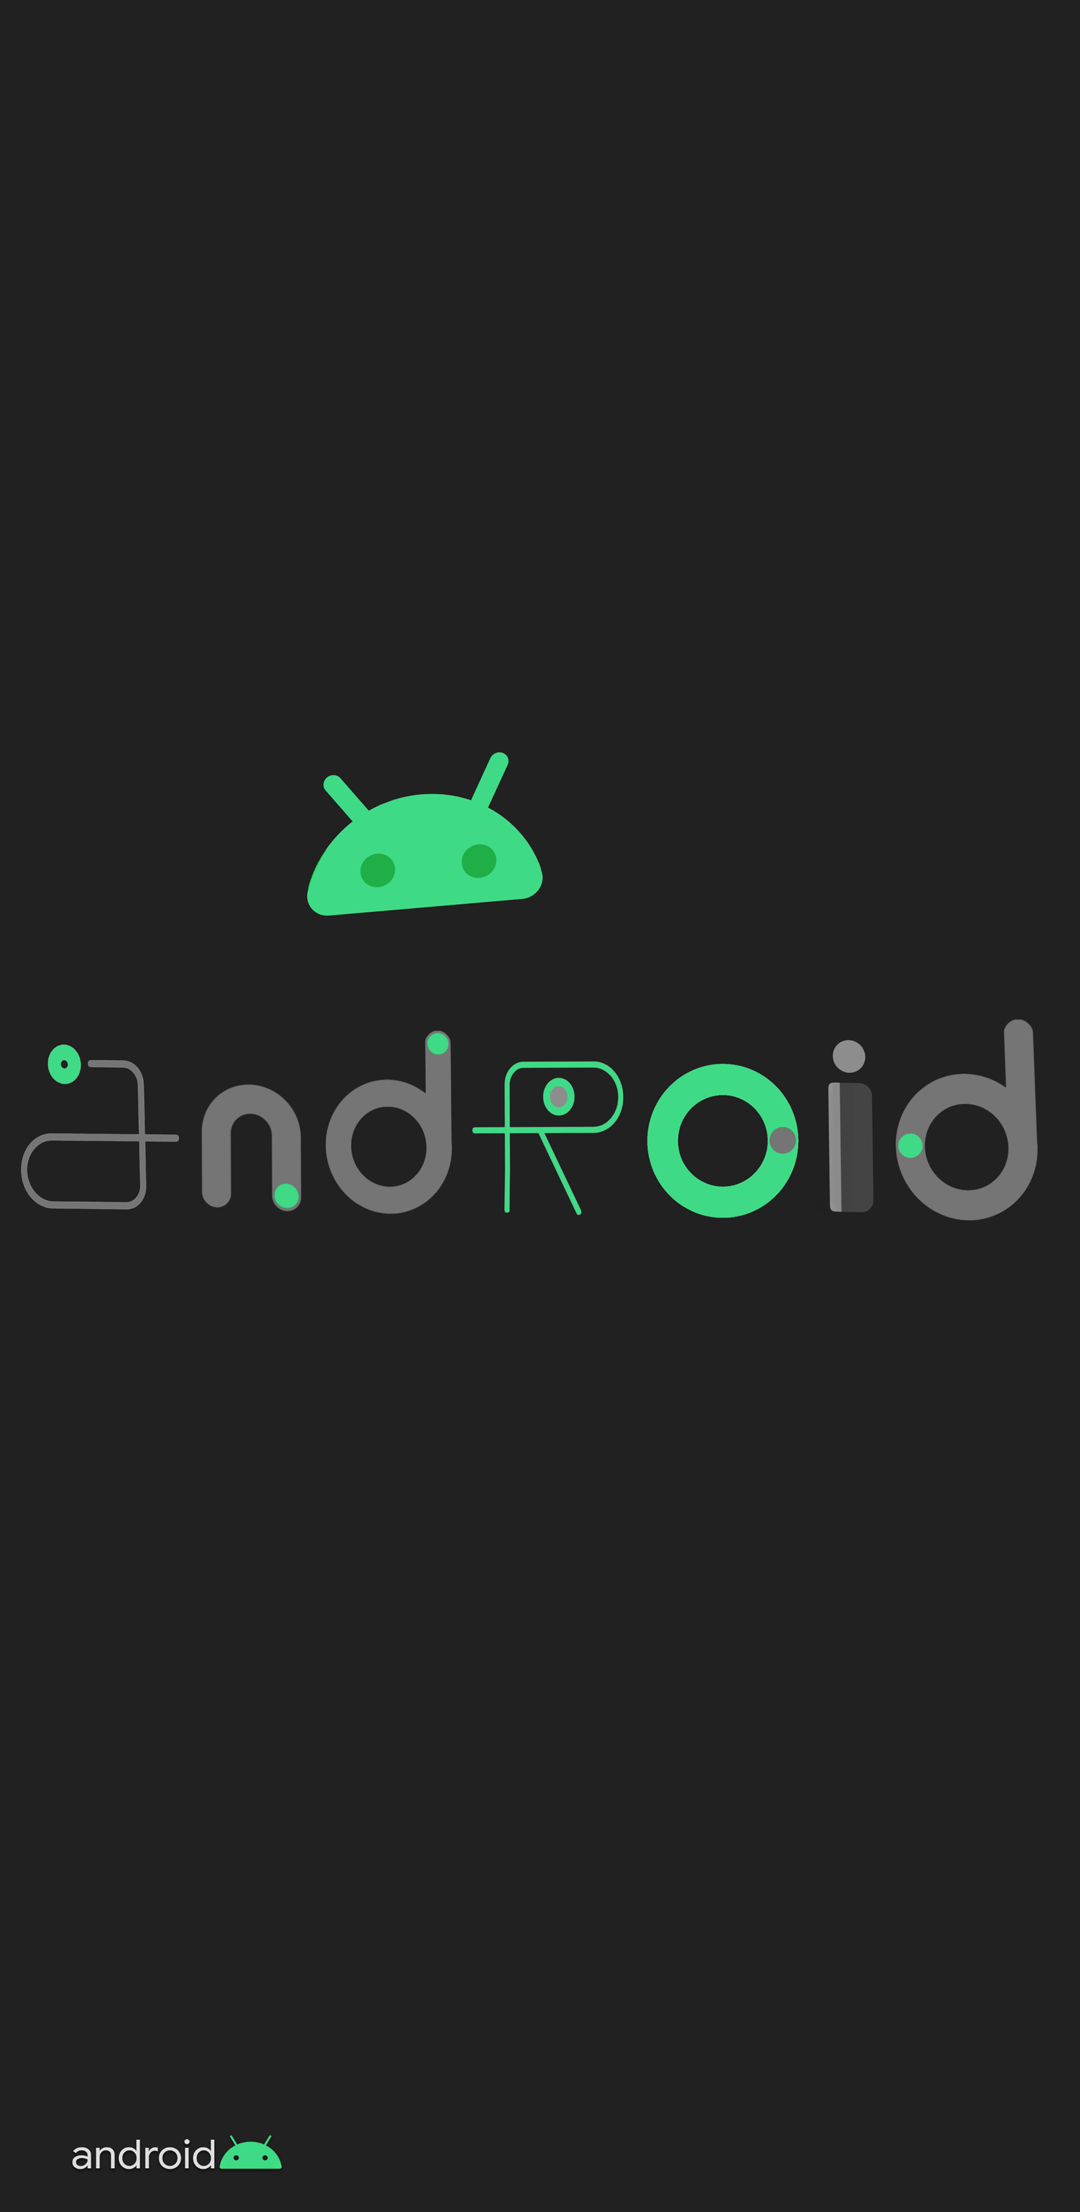 carta da parati android,verde,testo,font,grafica,tecnologia